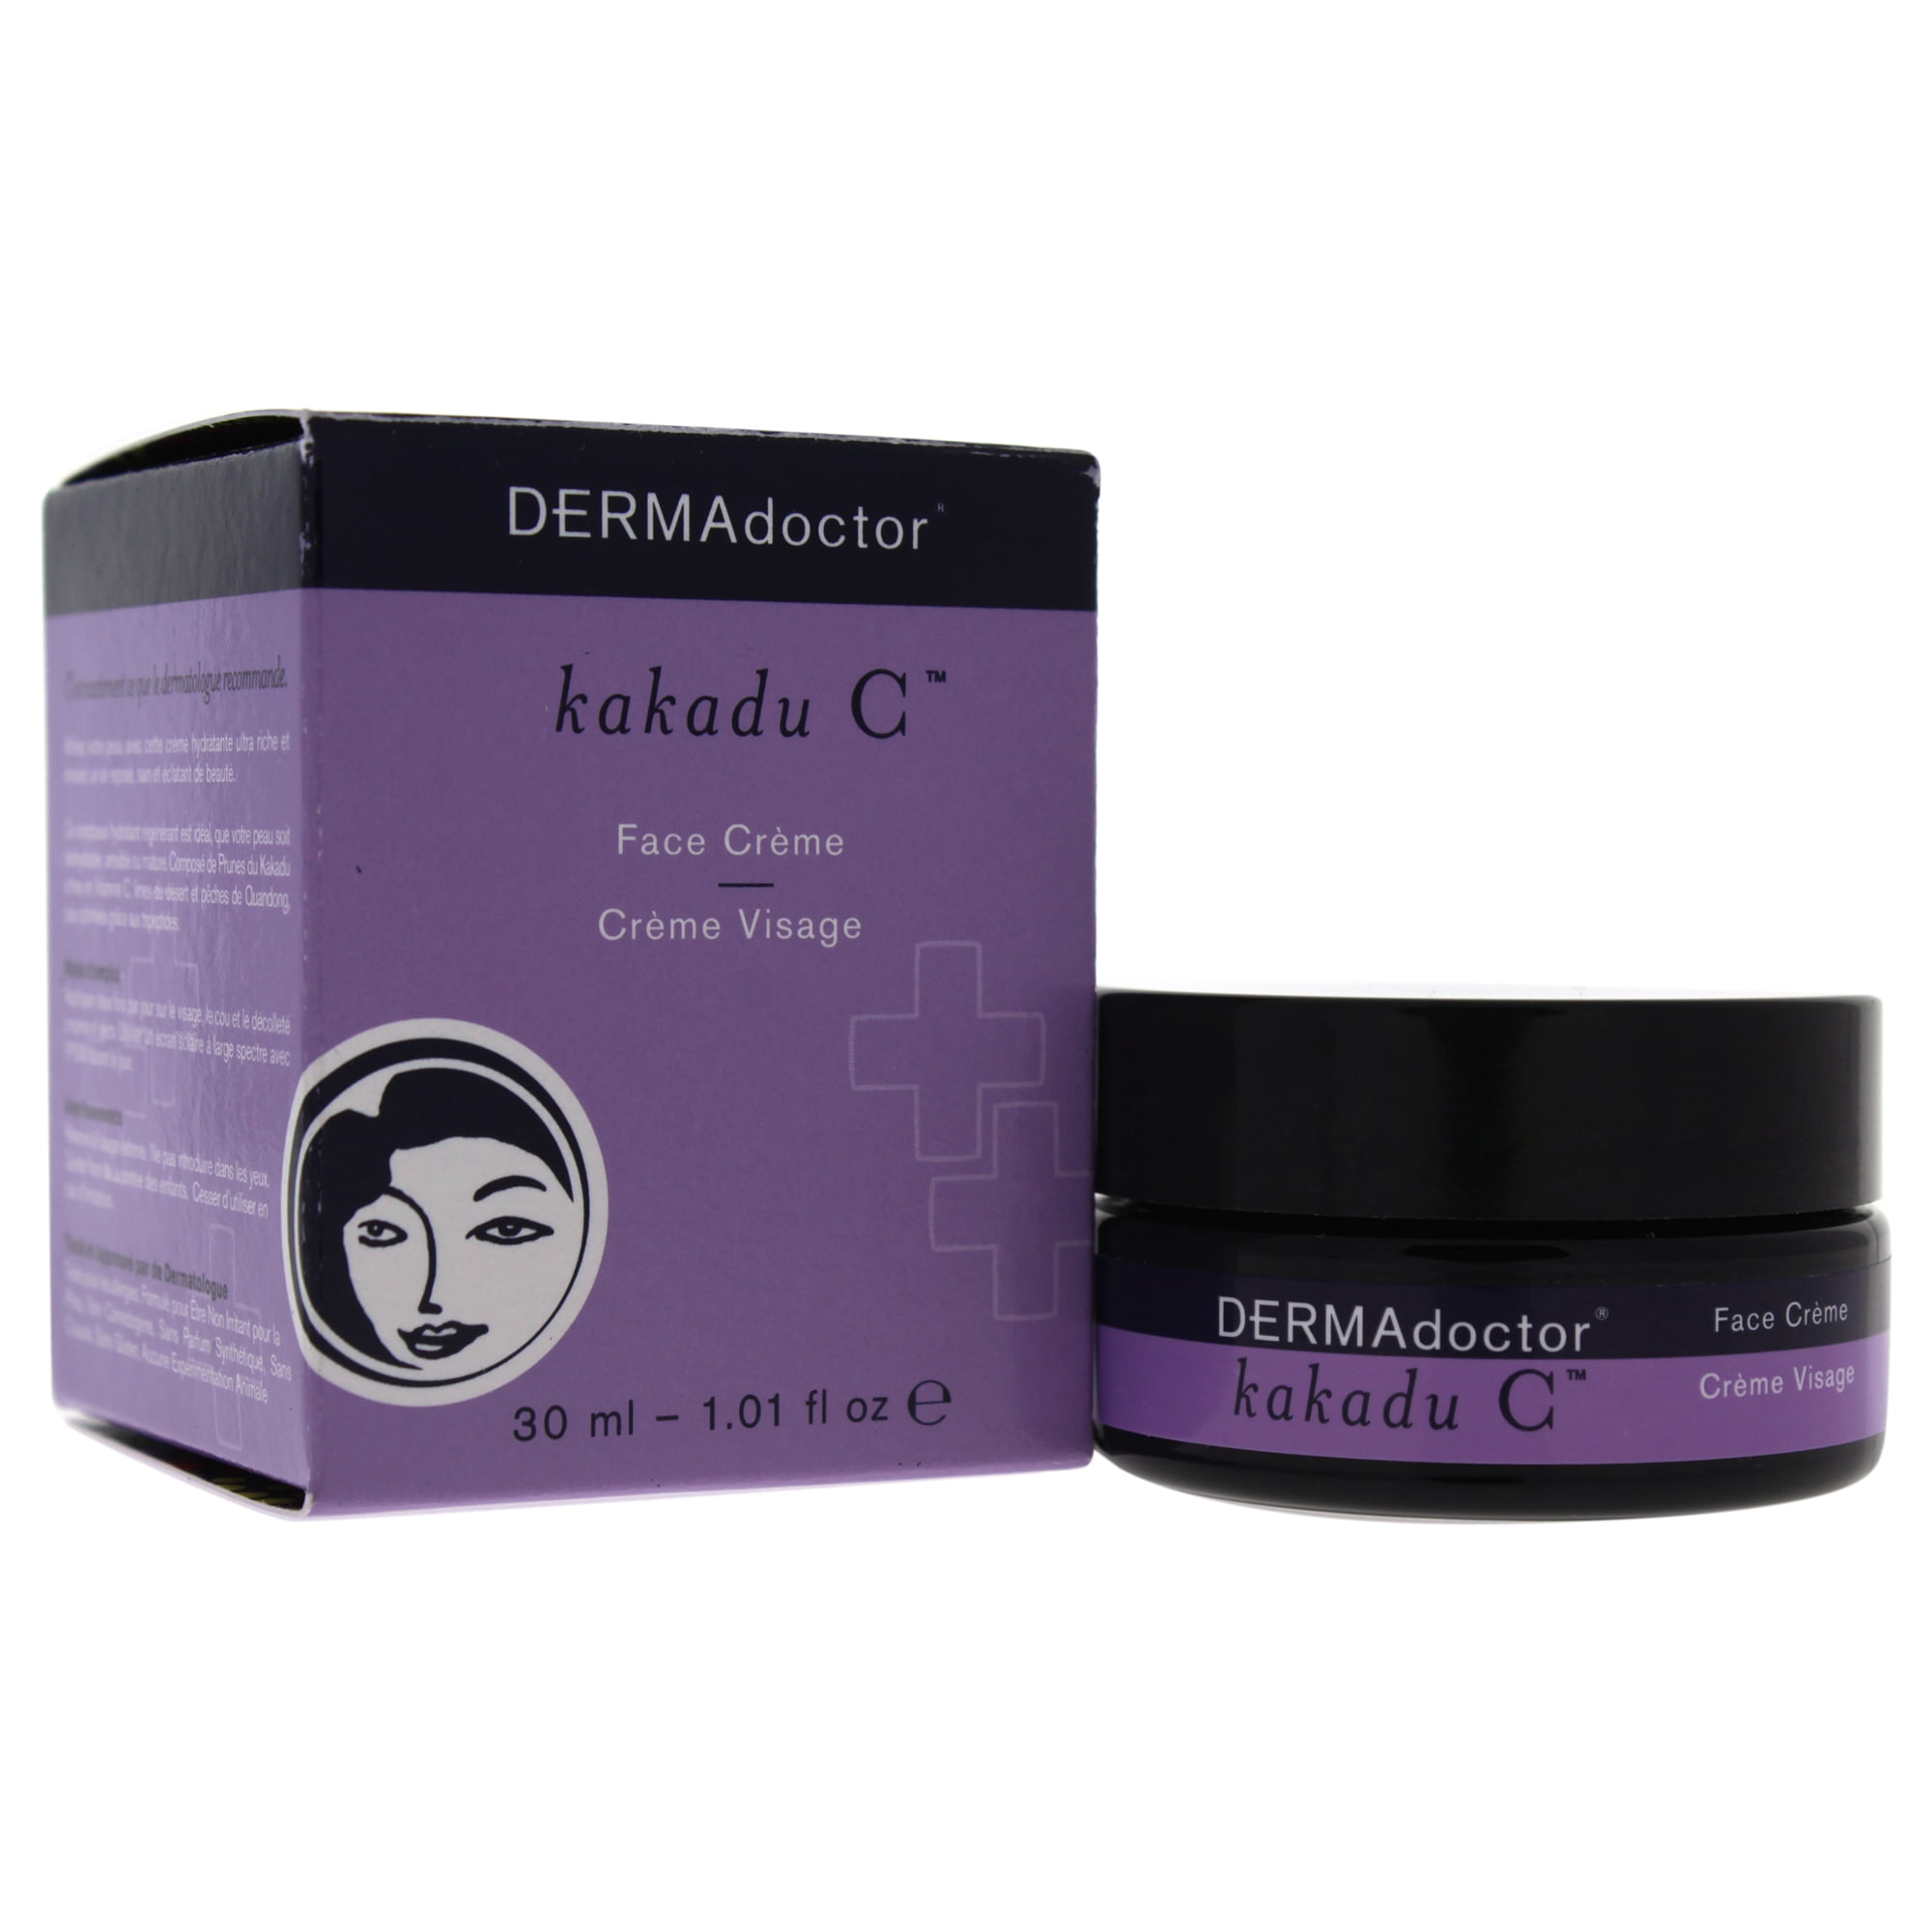 DERMAdoctor Kakadu C Face Creme by DERMAdoctor for Women 1.01 oz